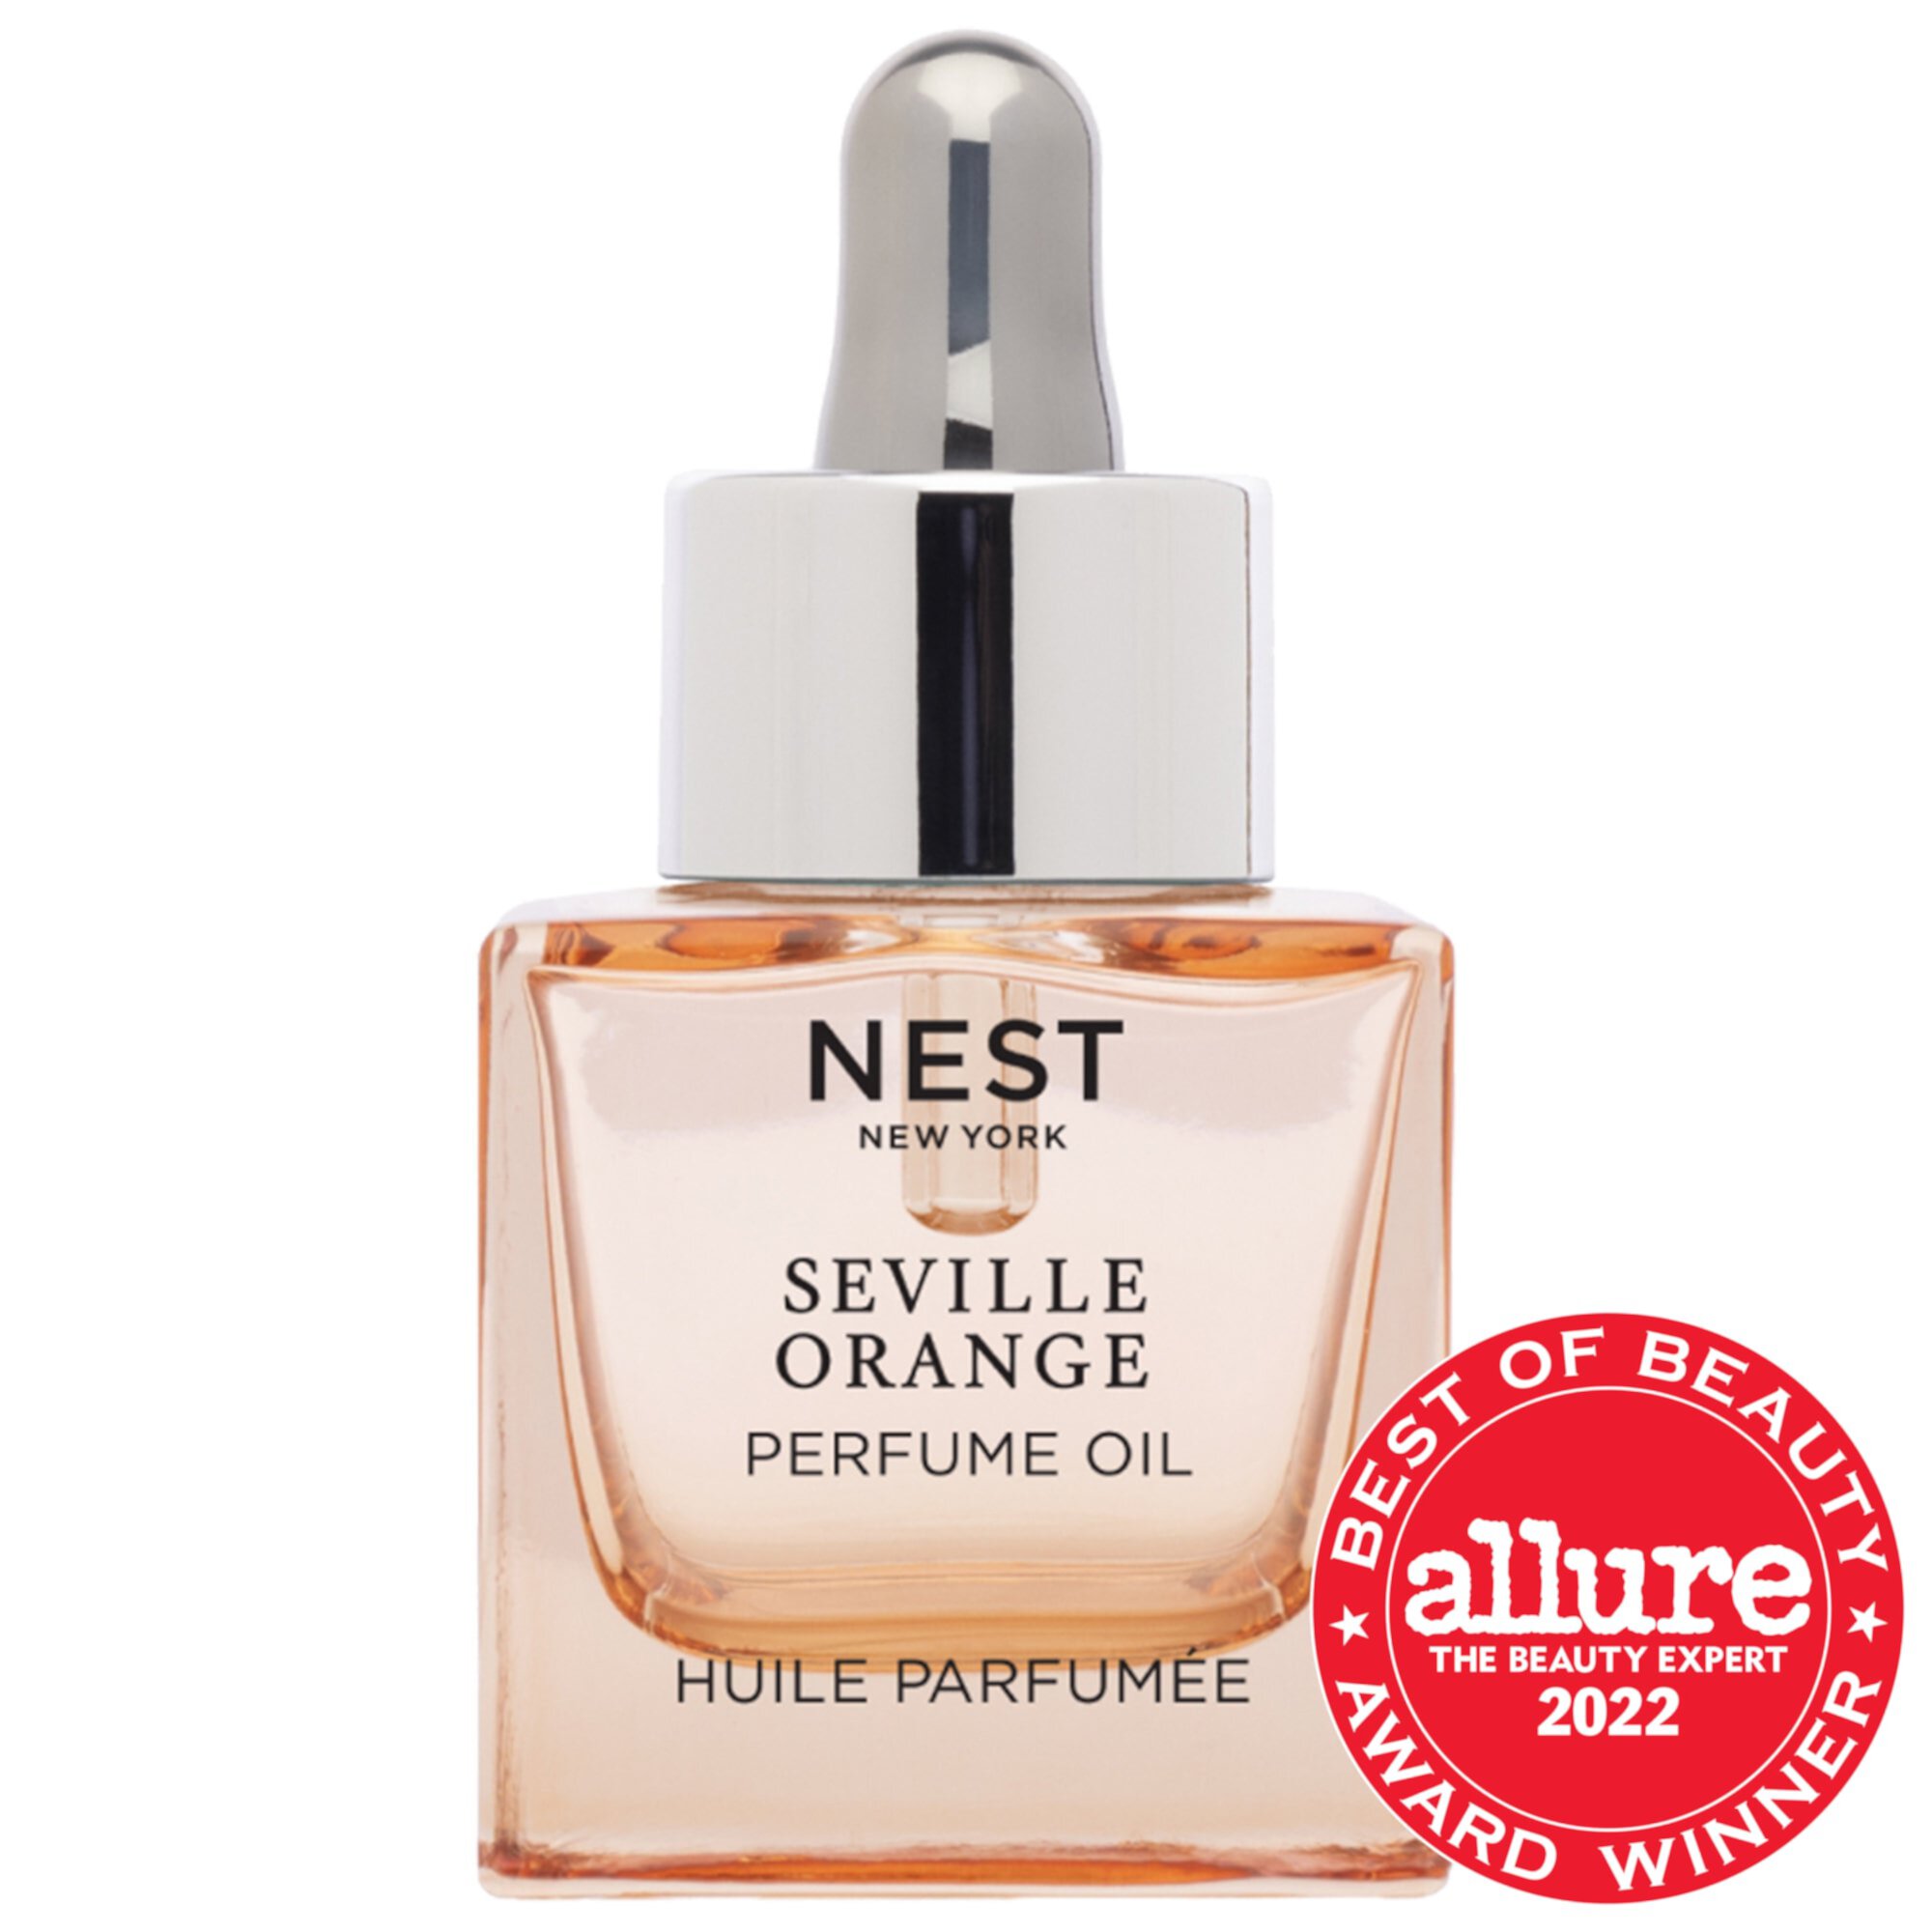 Seville Orange Perfume Oil Nest New York